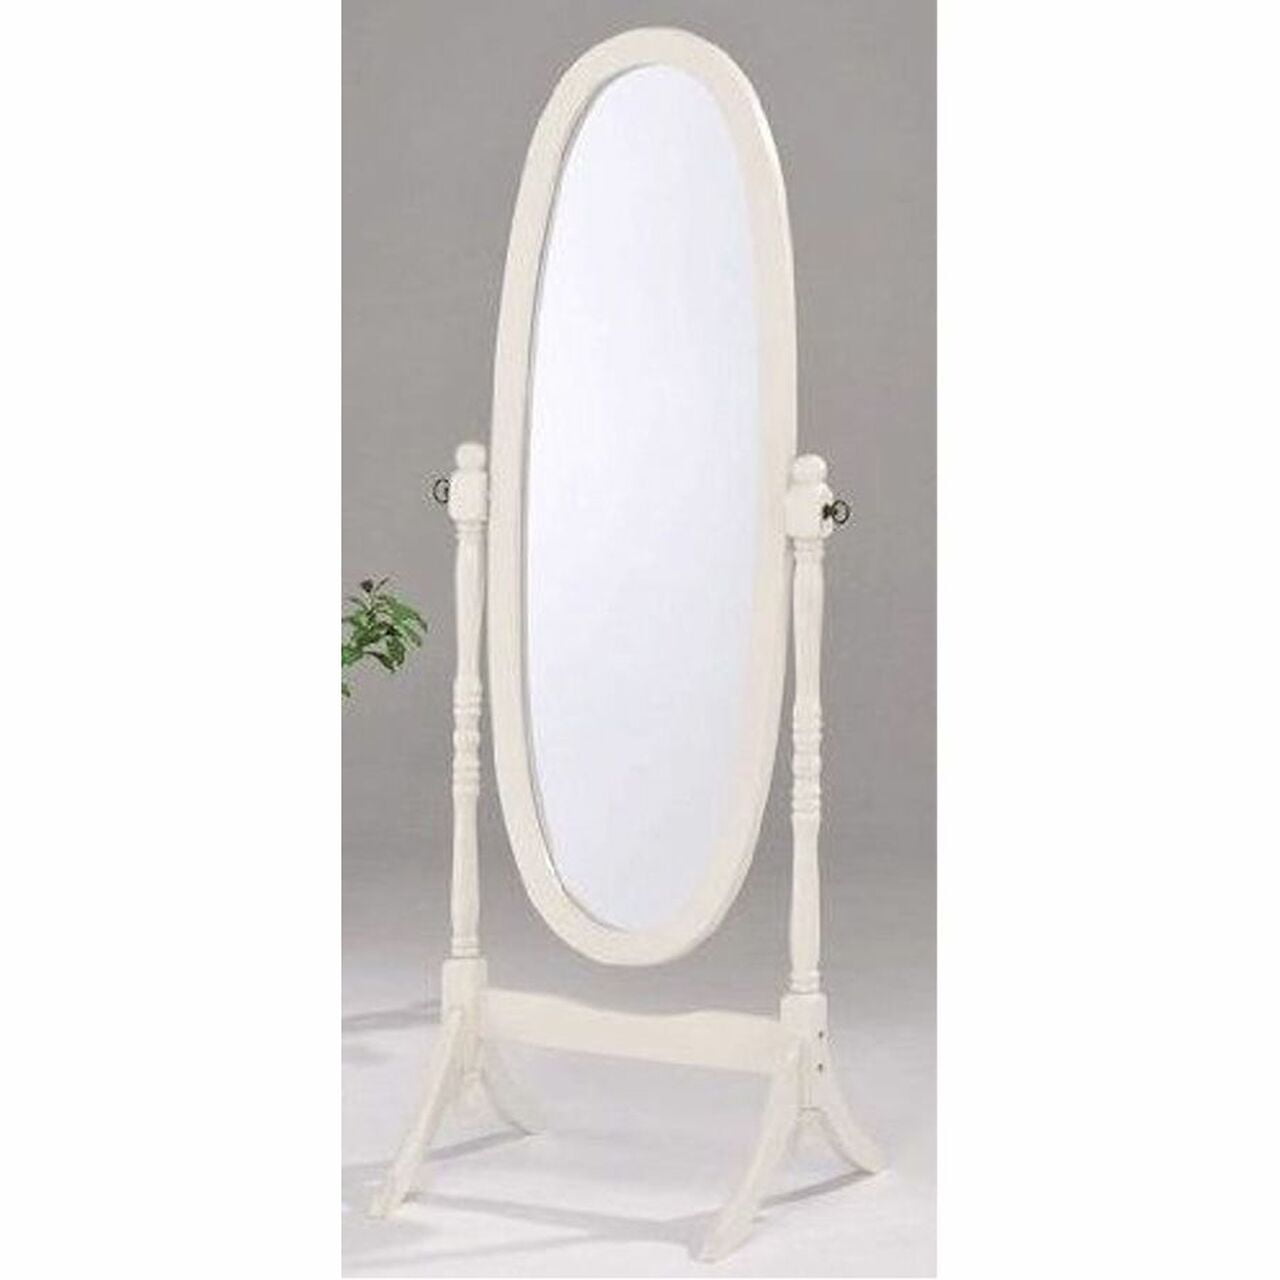 Swivel Full Length Wood Cheval Floor Mirror, White New - Walmart.com